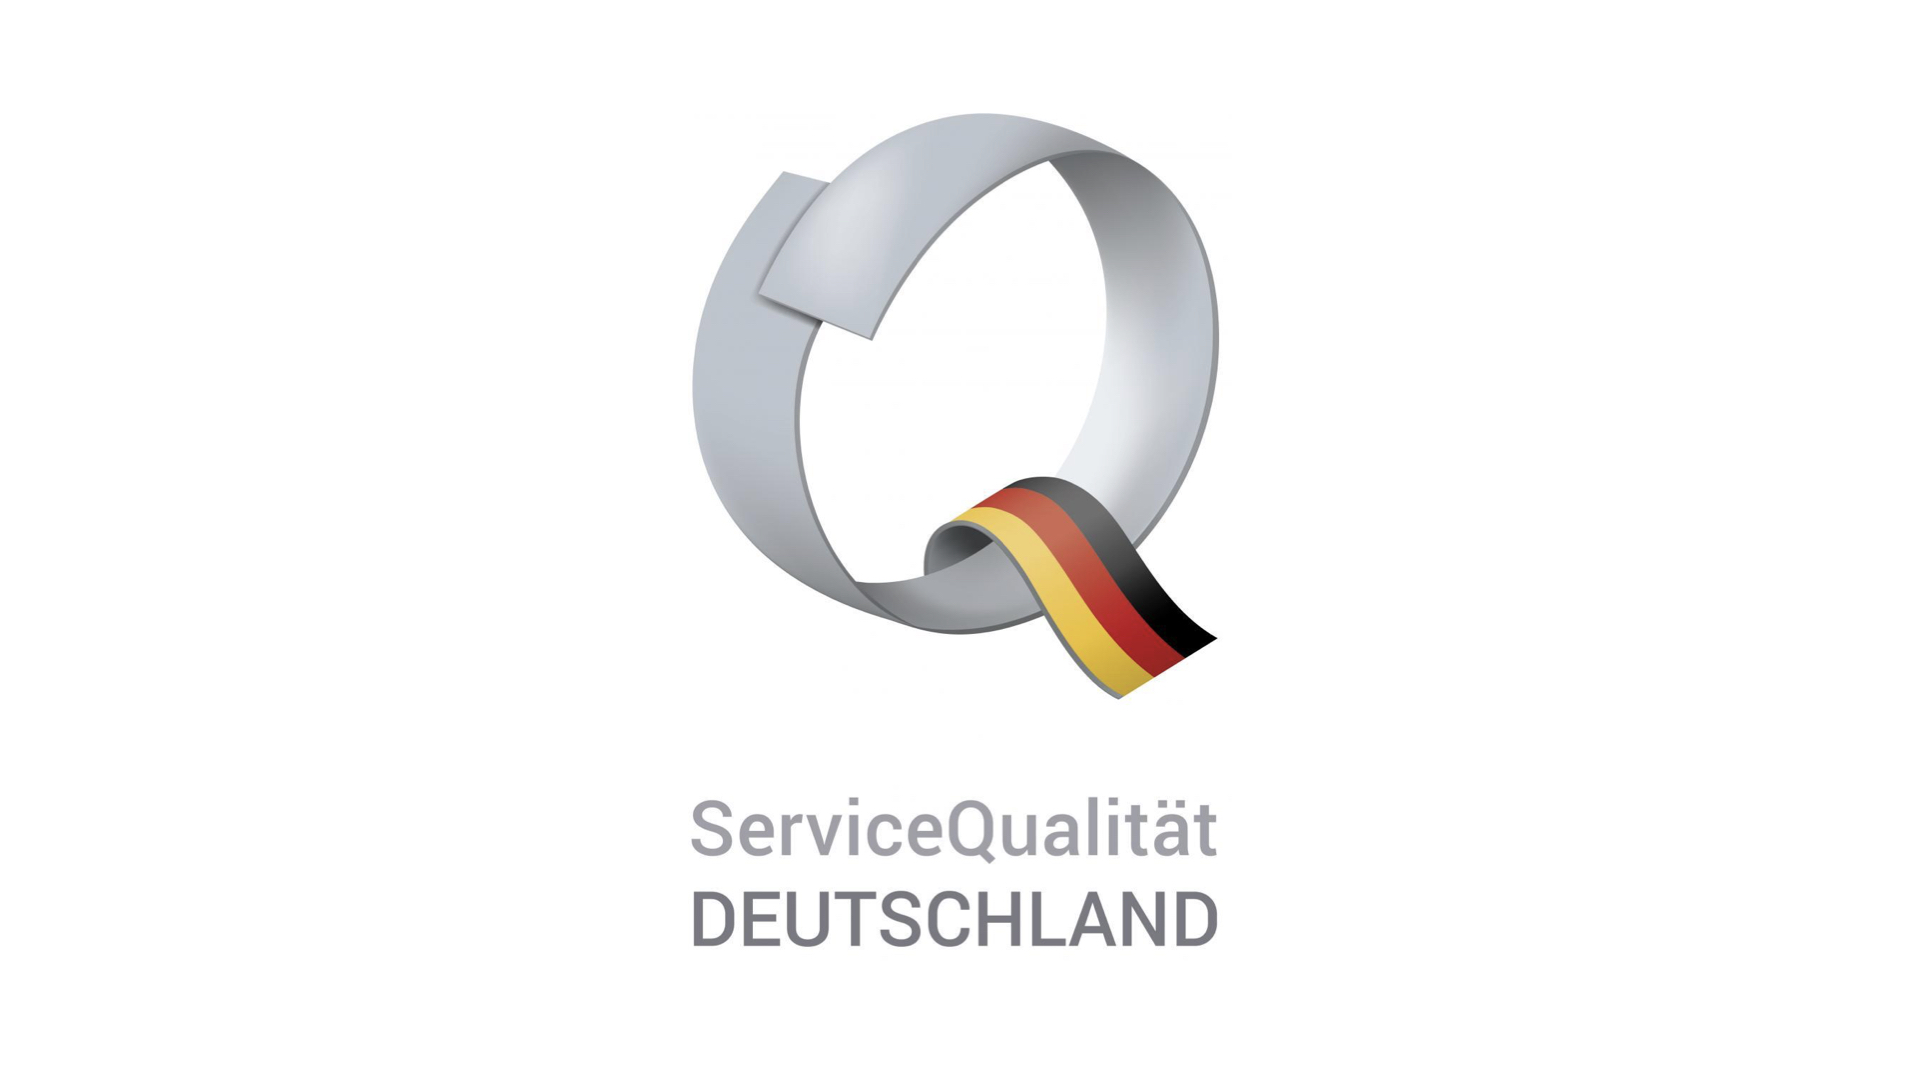 Service Qualität Deutschland © Deutscher Tourismusverband